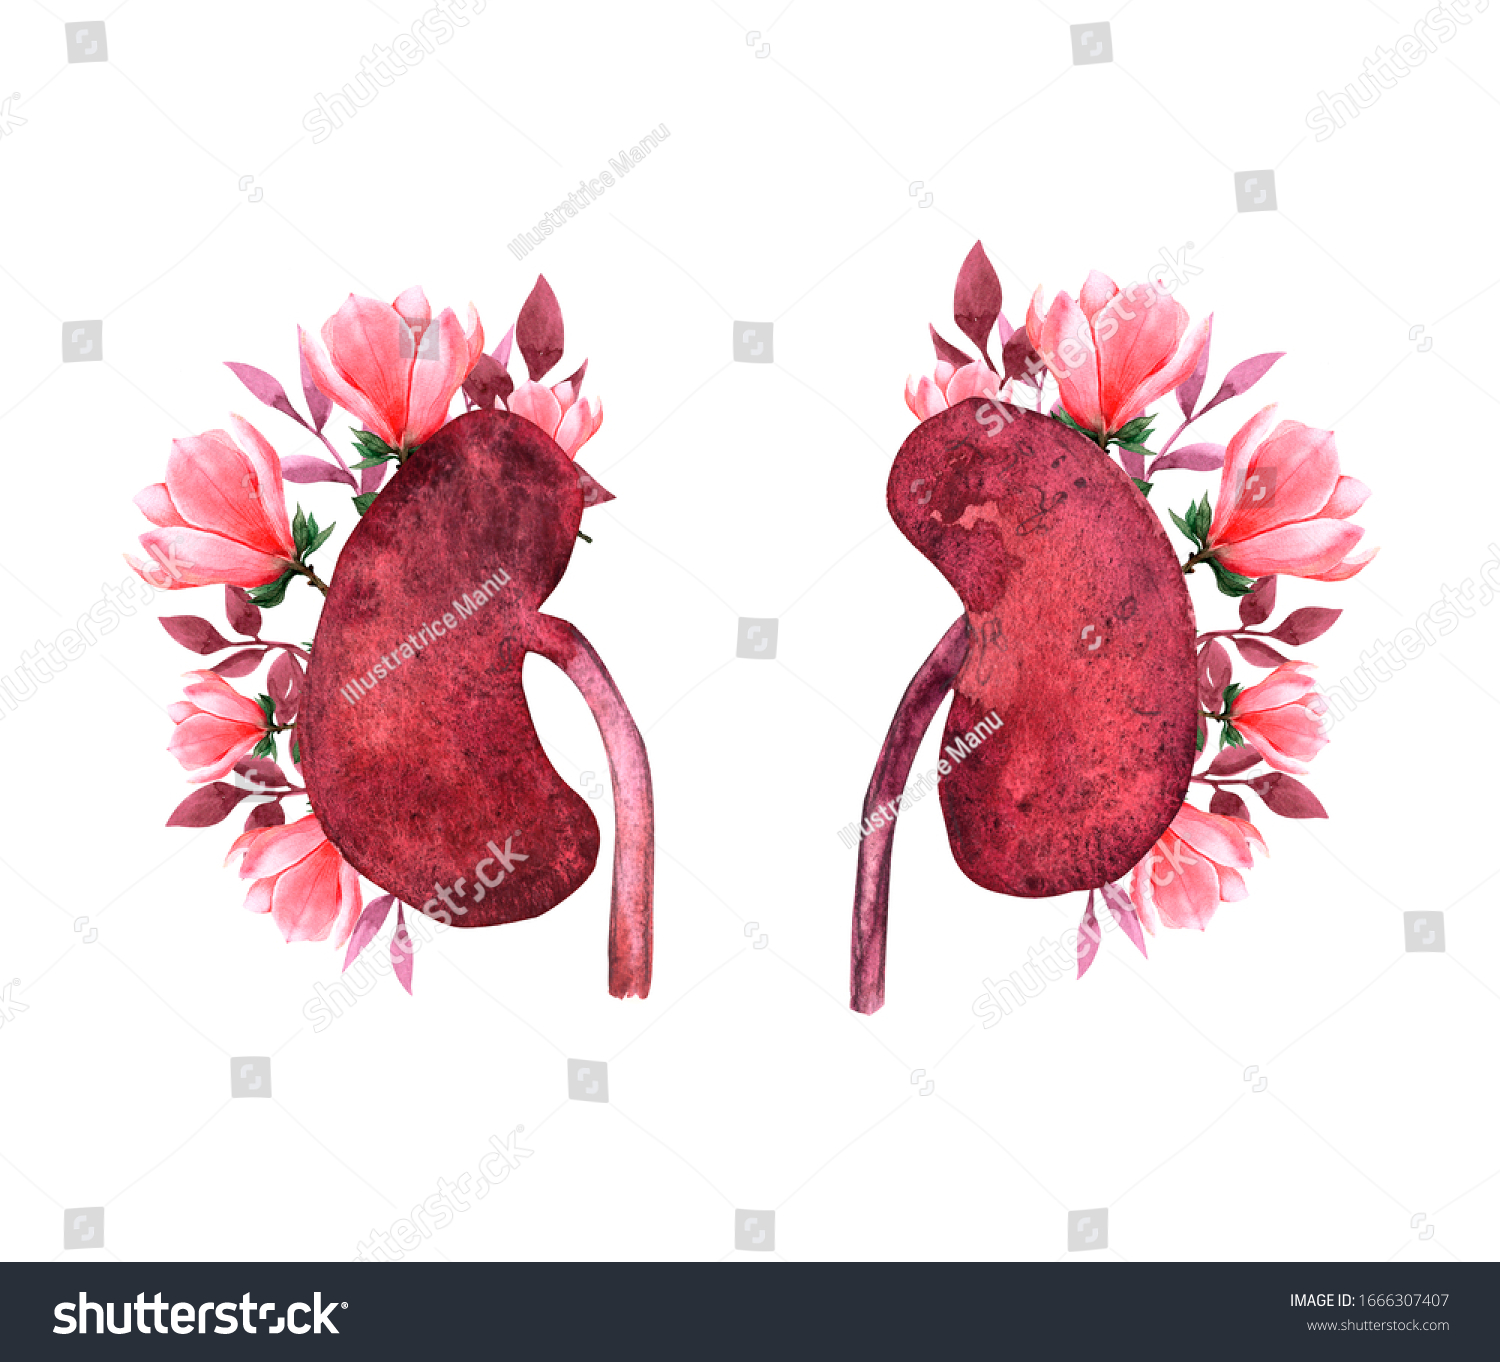 白い背景に花と腎臓の人間の腎臓の写実的な正面図 世界の腎臓デイカード かわいい腎臓のカップルを描いた水彩イラスト のイラスト素材